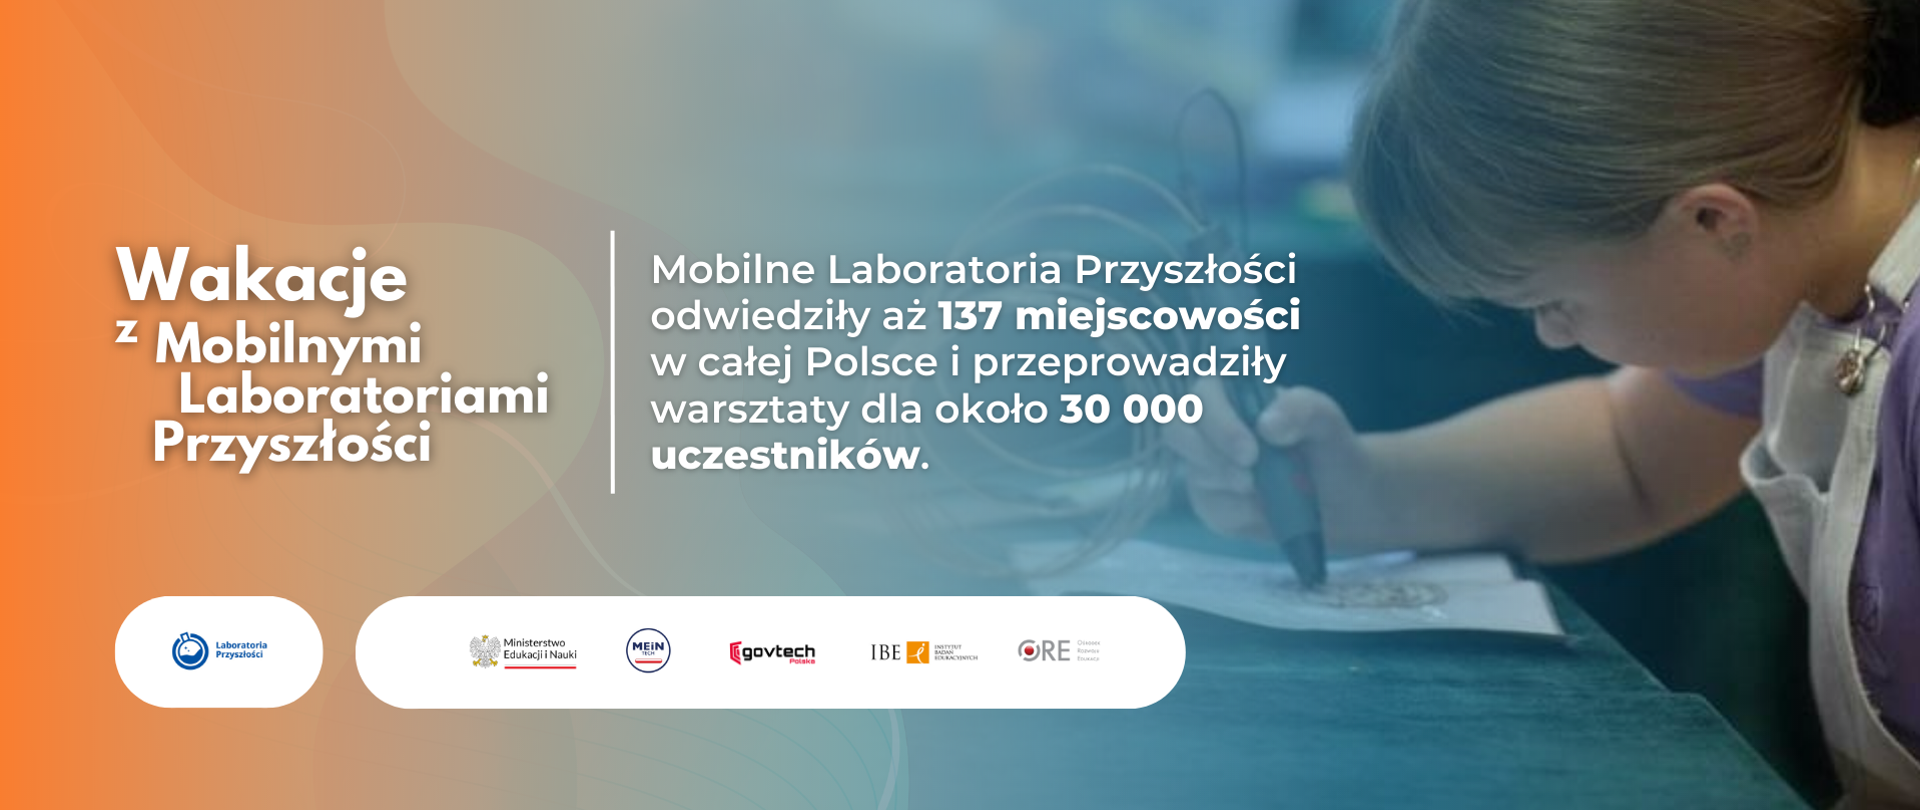 Wakacje z Mobilnymi Laboratoriami Przyszłości
Mobilne Laboratoria Przyszłości odwiedziły aż 137 miejscowości w całej Polsce i przeprowadziły warsztaty dla około 30 000 uczestników.
W tle zdjęcie dziewczynki rysującej długopisem 3D.
Logotypy: Laboratoria Przyszłości, Ministerstwo Edukacji i Nauki, MEiN Tech, Centrum GovTech, IBE Instytut Badań Edukacyjnych, ORE Ośrodek Rozwoju Edukacji